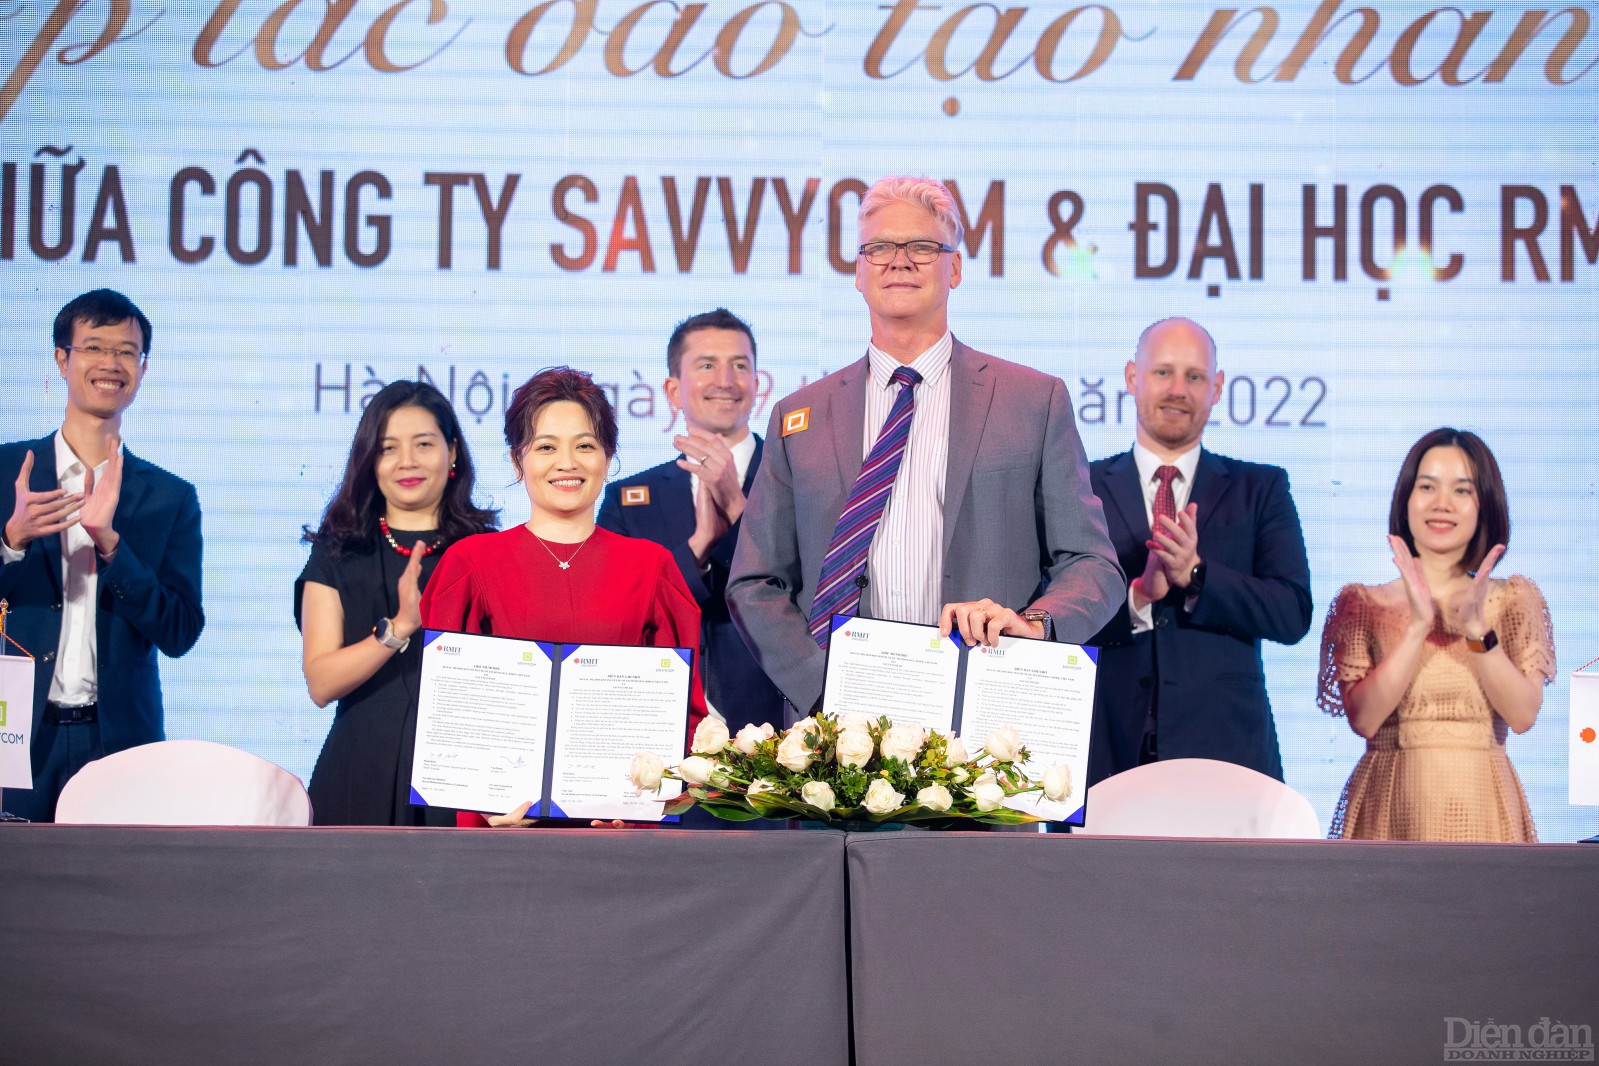 Lễ ký kết biên bản ghi nhớ giữa Savvycom và Đại học RMIT Việt Nam